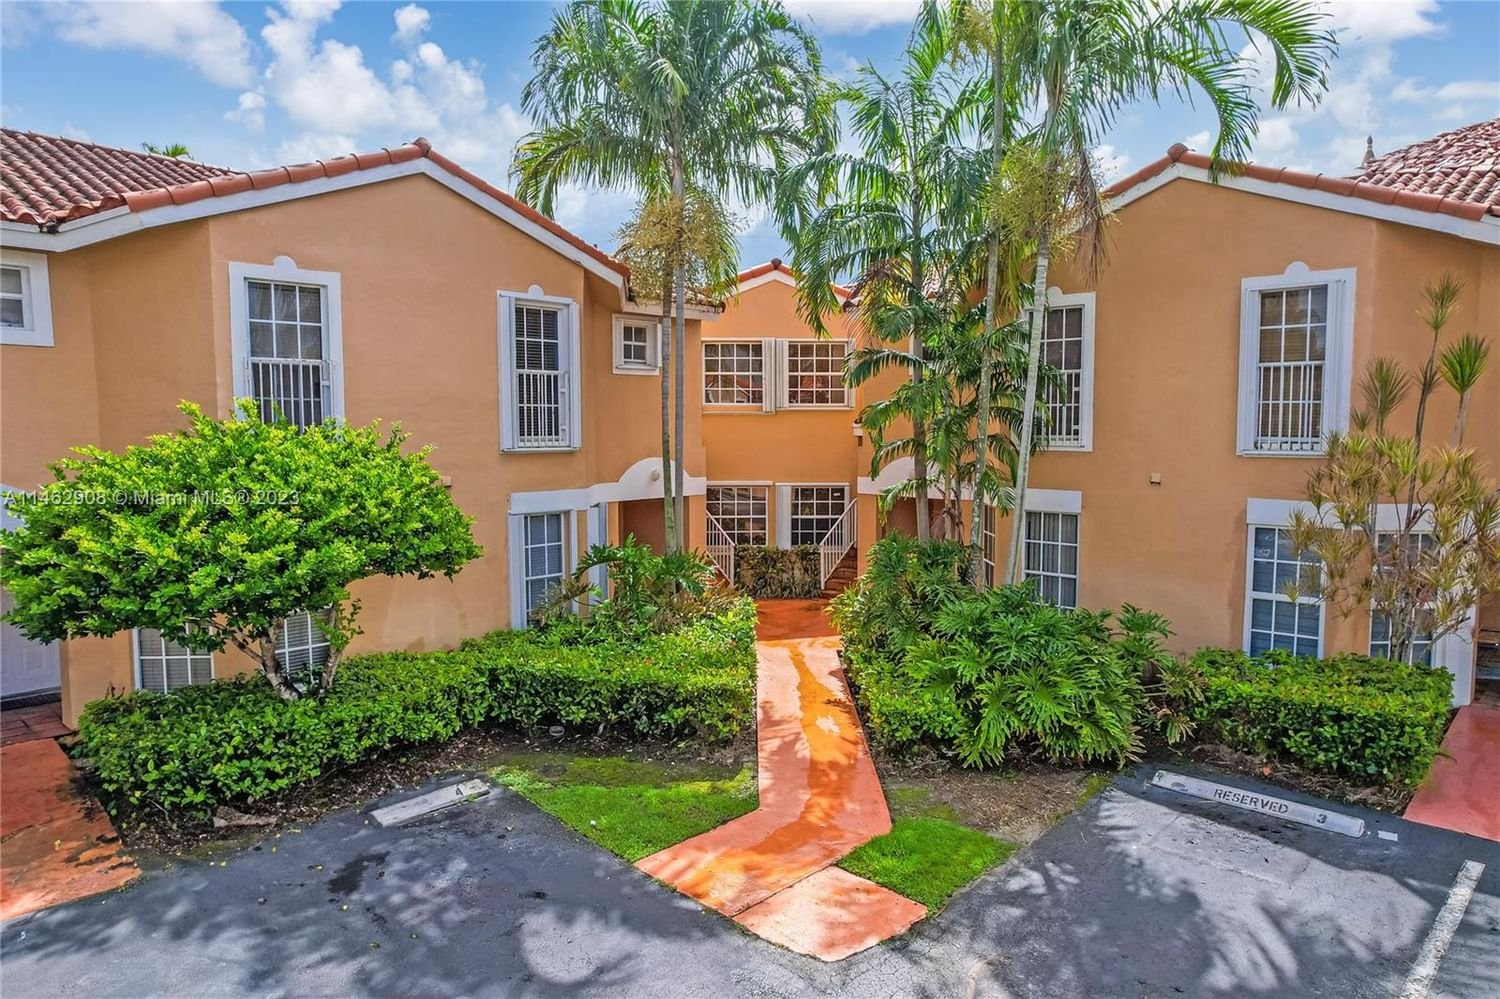 Real estate property located at 14305 57th Ln #7-5, Miami-Dade County, Miami, FL